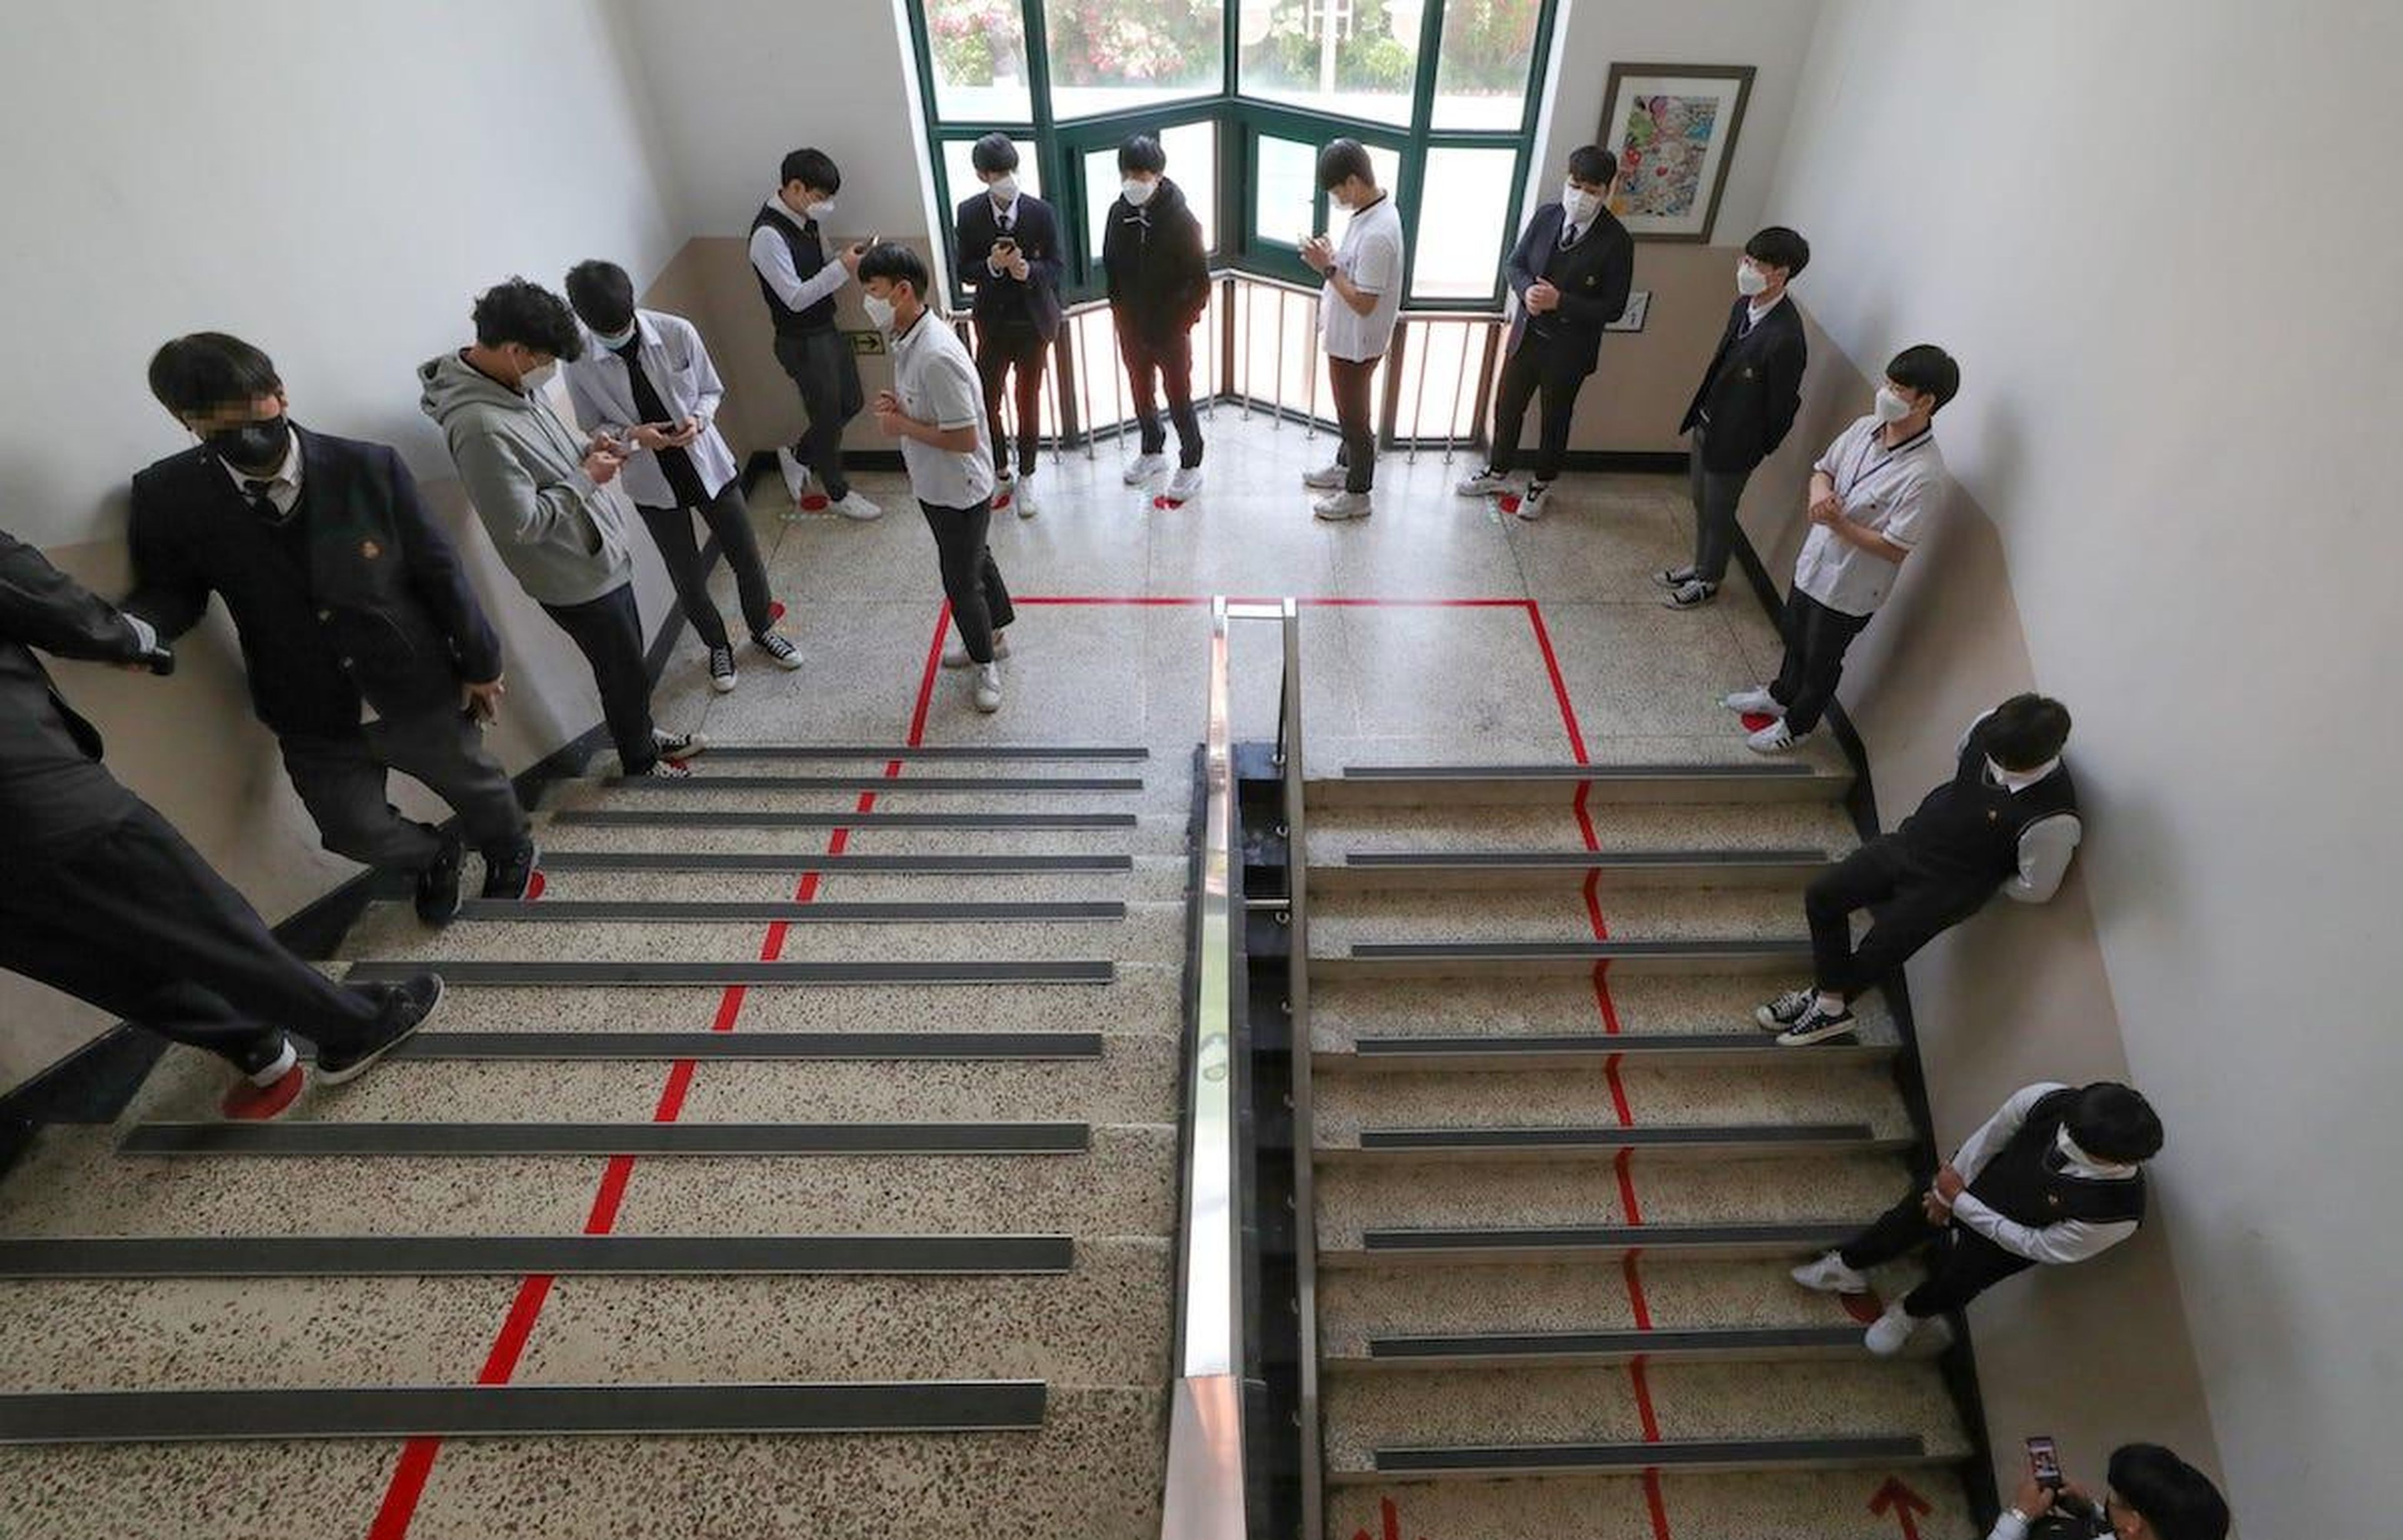 Alumnos de secundaria hacen cola para entrar al comedor del instituto en Seúl, 20 de mayo de 2020.